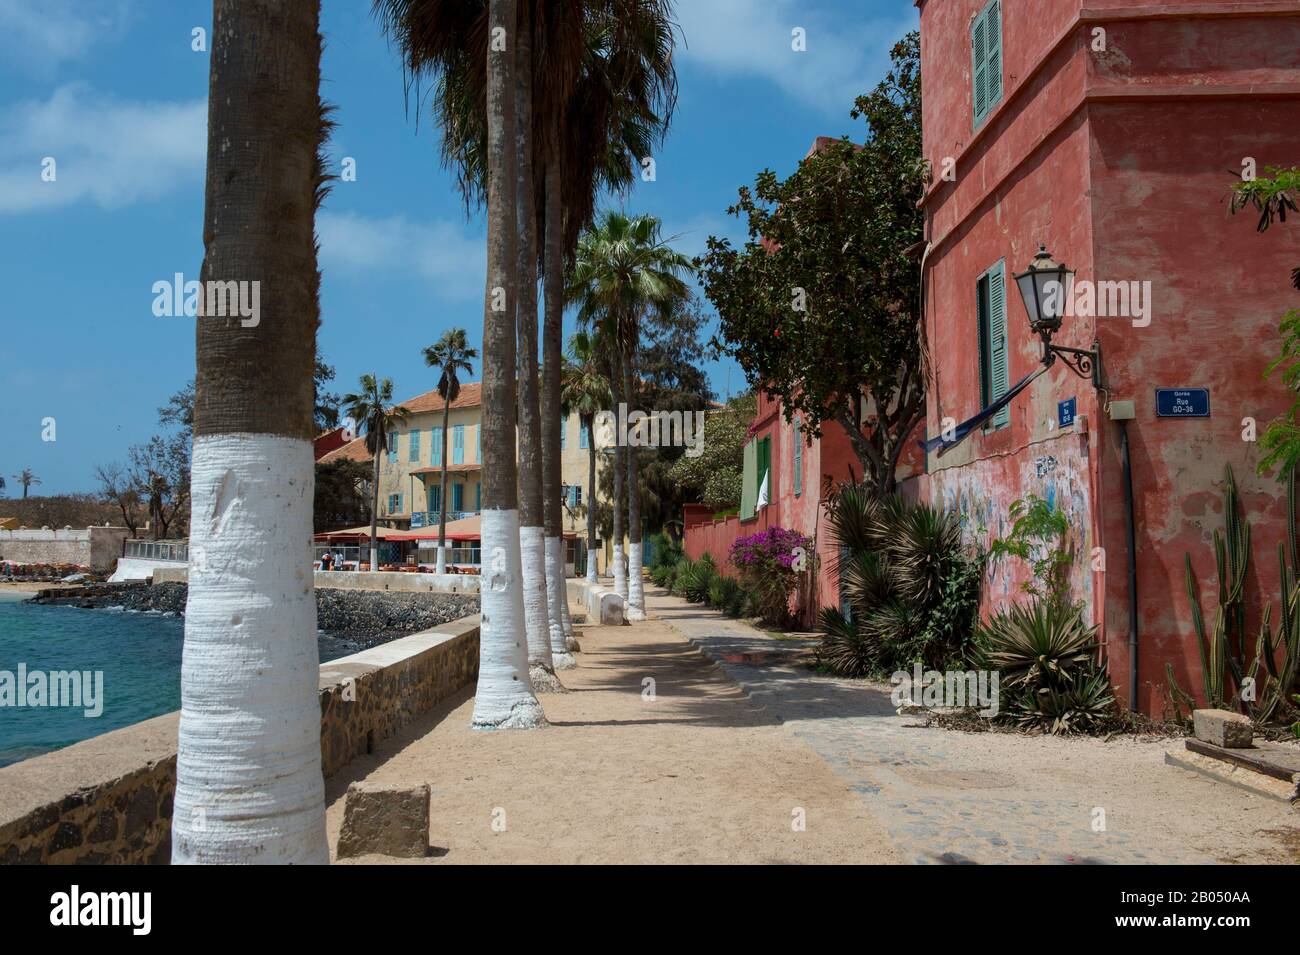 Street scena sull'isola di Goree nell'Oceano Atlantico fuori da Dakar in Senegal, Africa Occidentale. Foto Stock